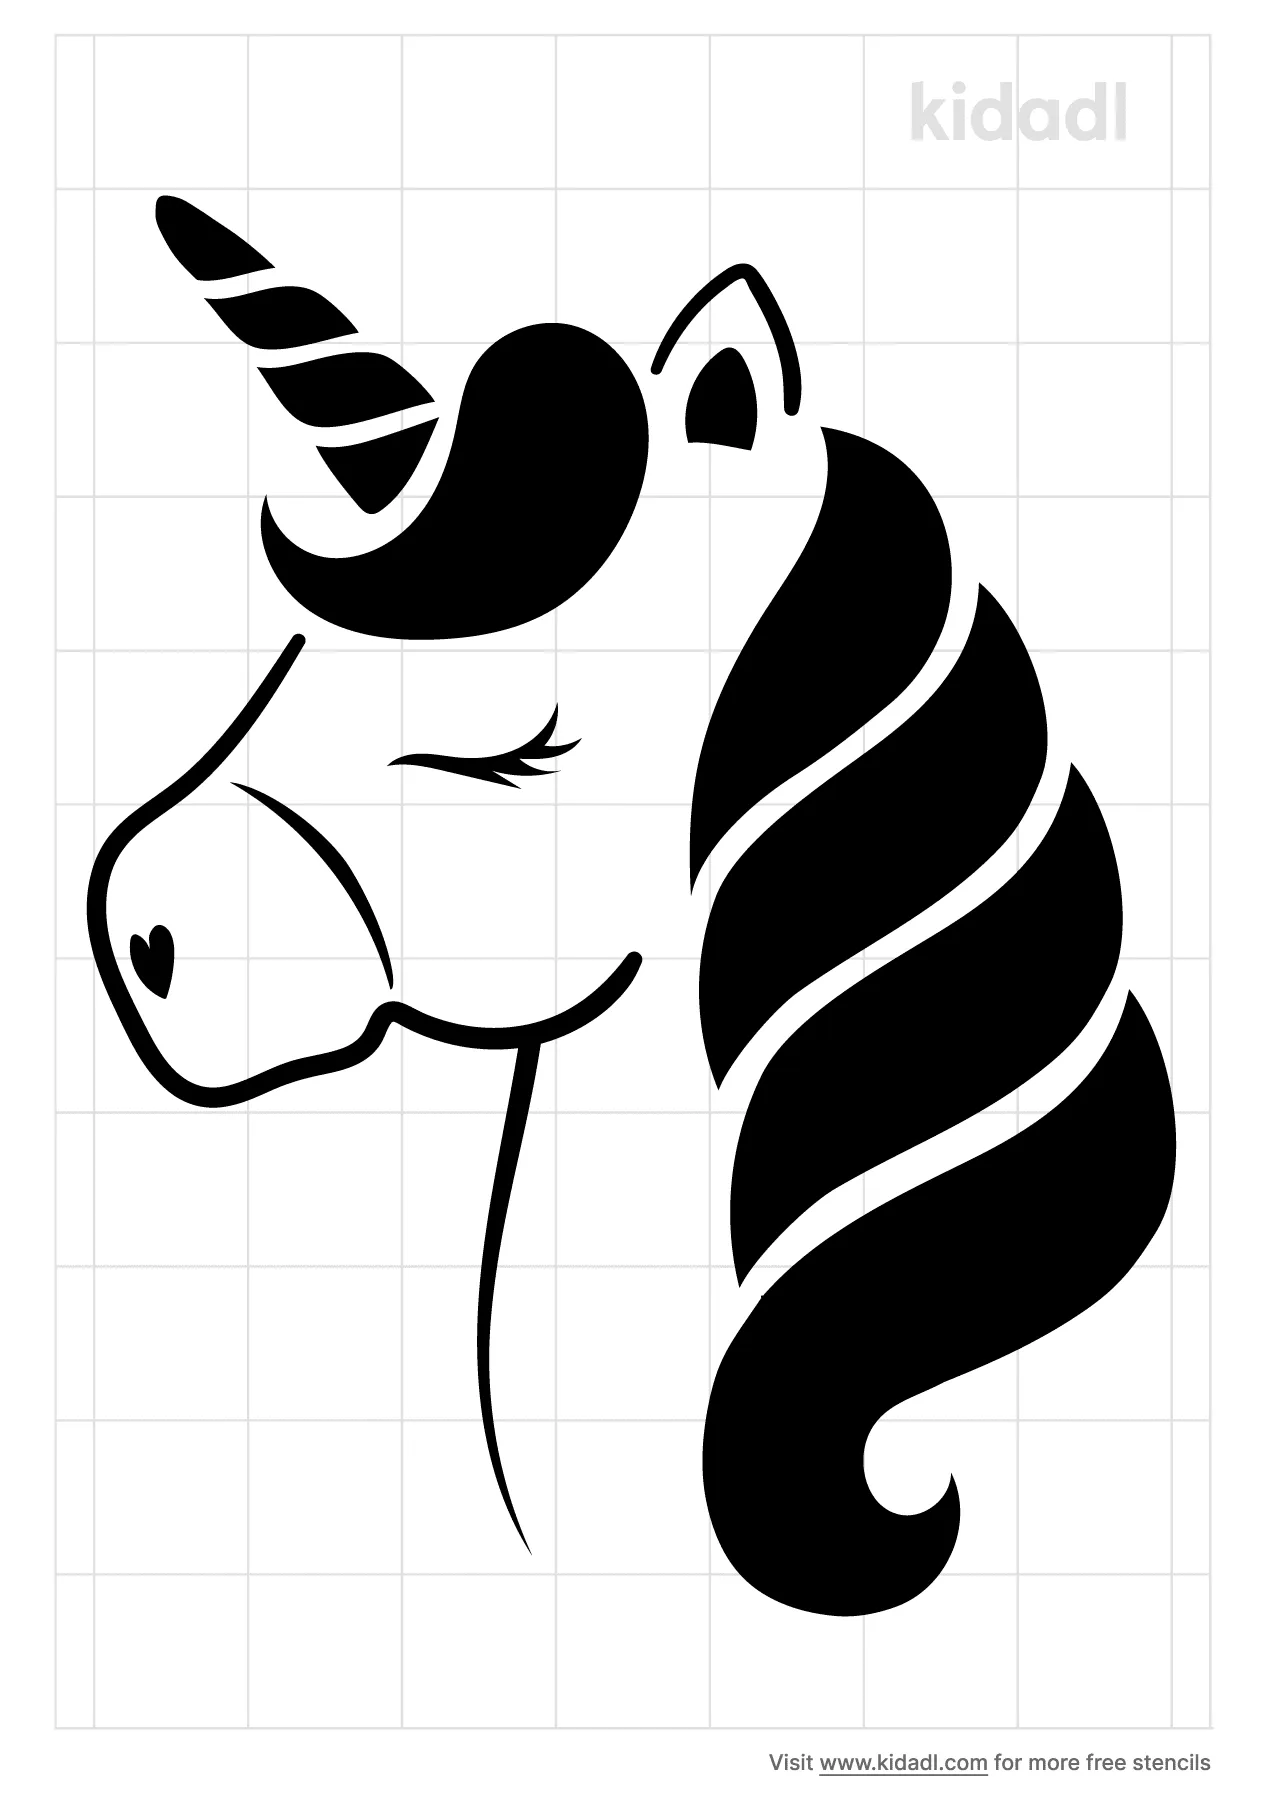 Cute Unicorn Stencils Free Printable Unicorns Stencils Kidadl And Unicorns Stencils Free Printable Stencils Kidadl